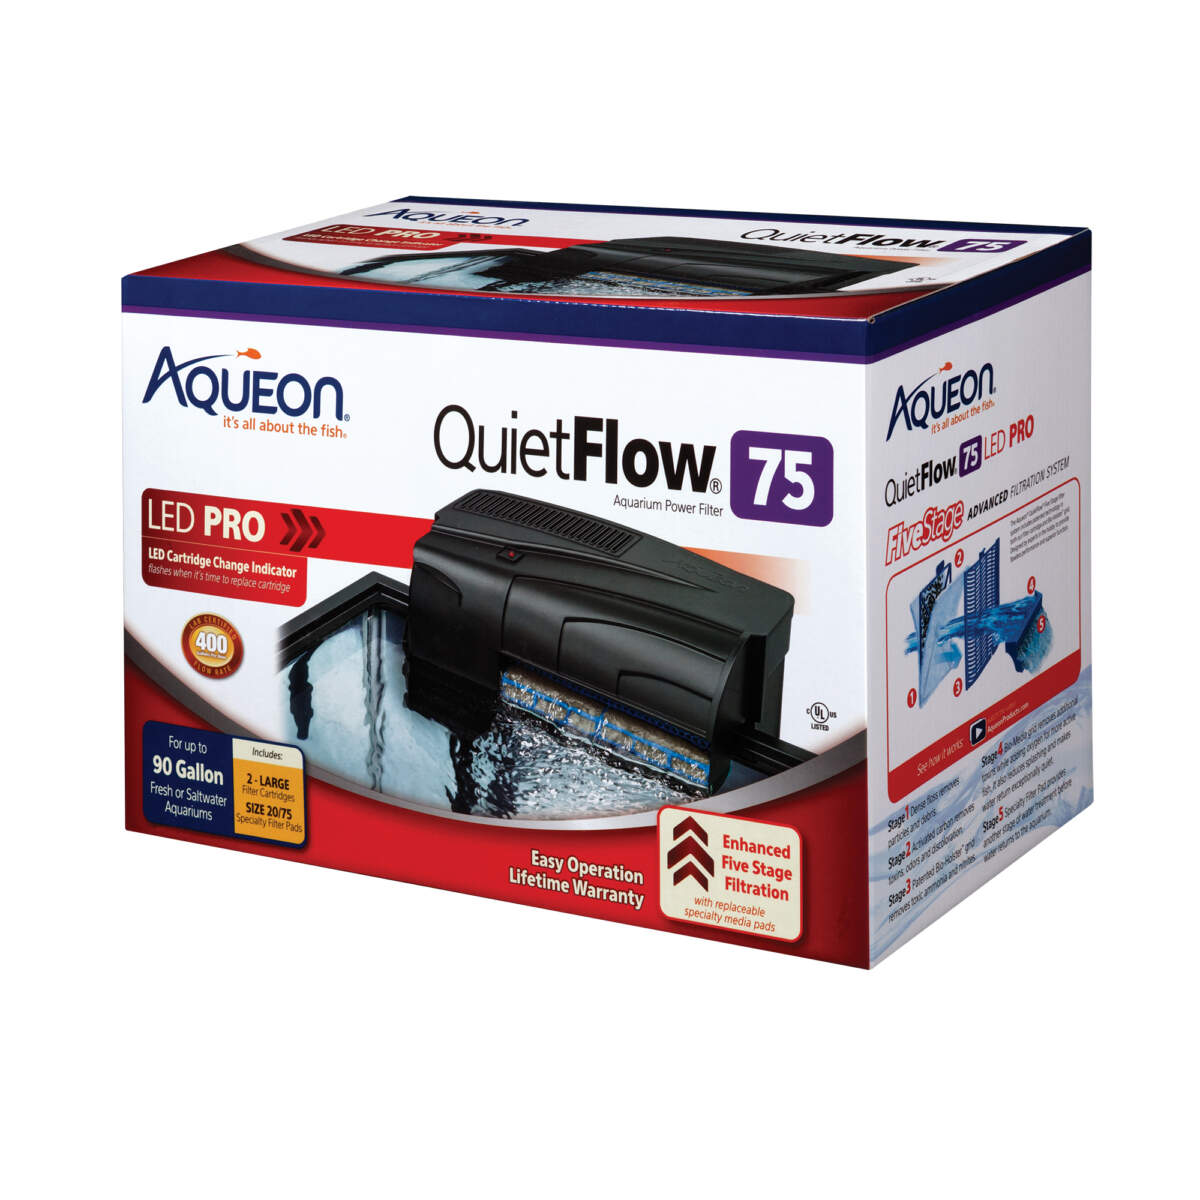 Aqueon QuietFlow 75 LED PRO Aquarium Power Filter